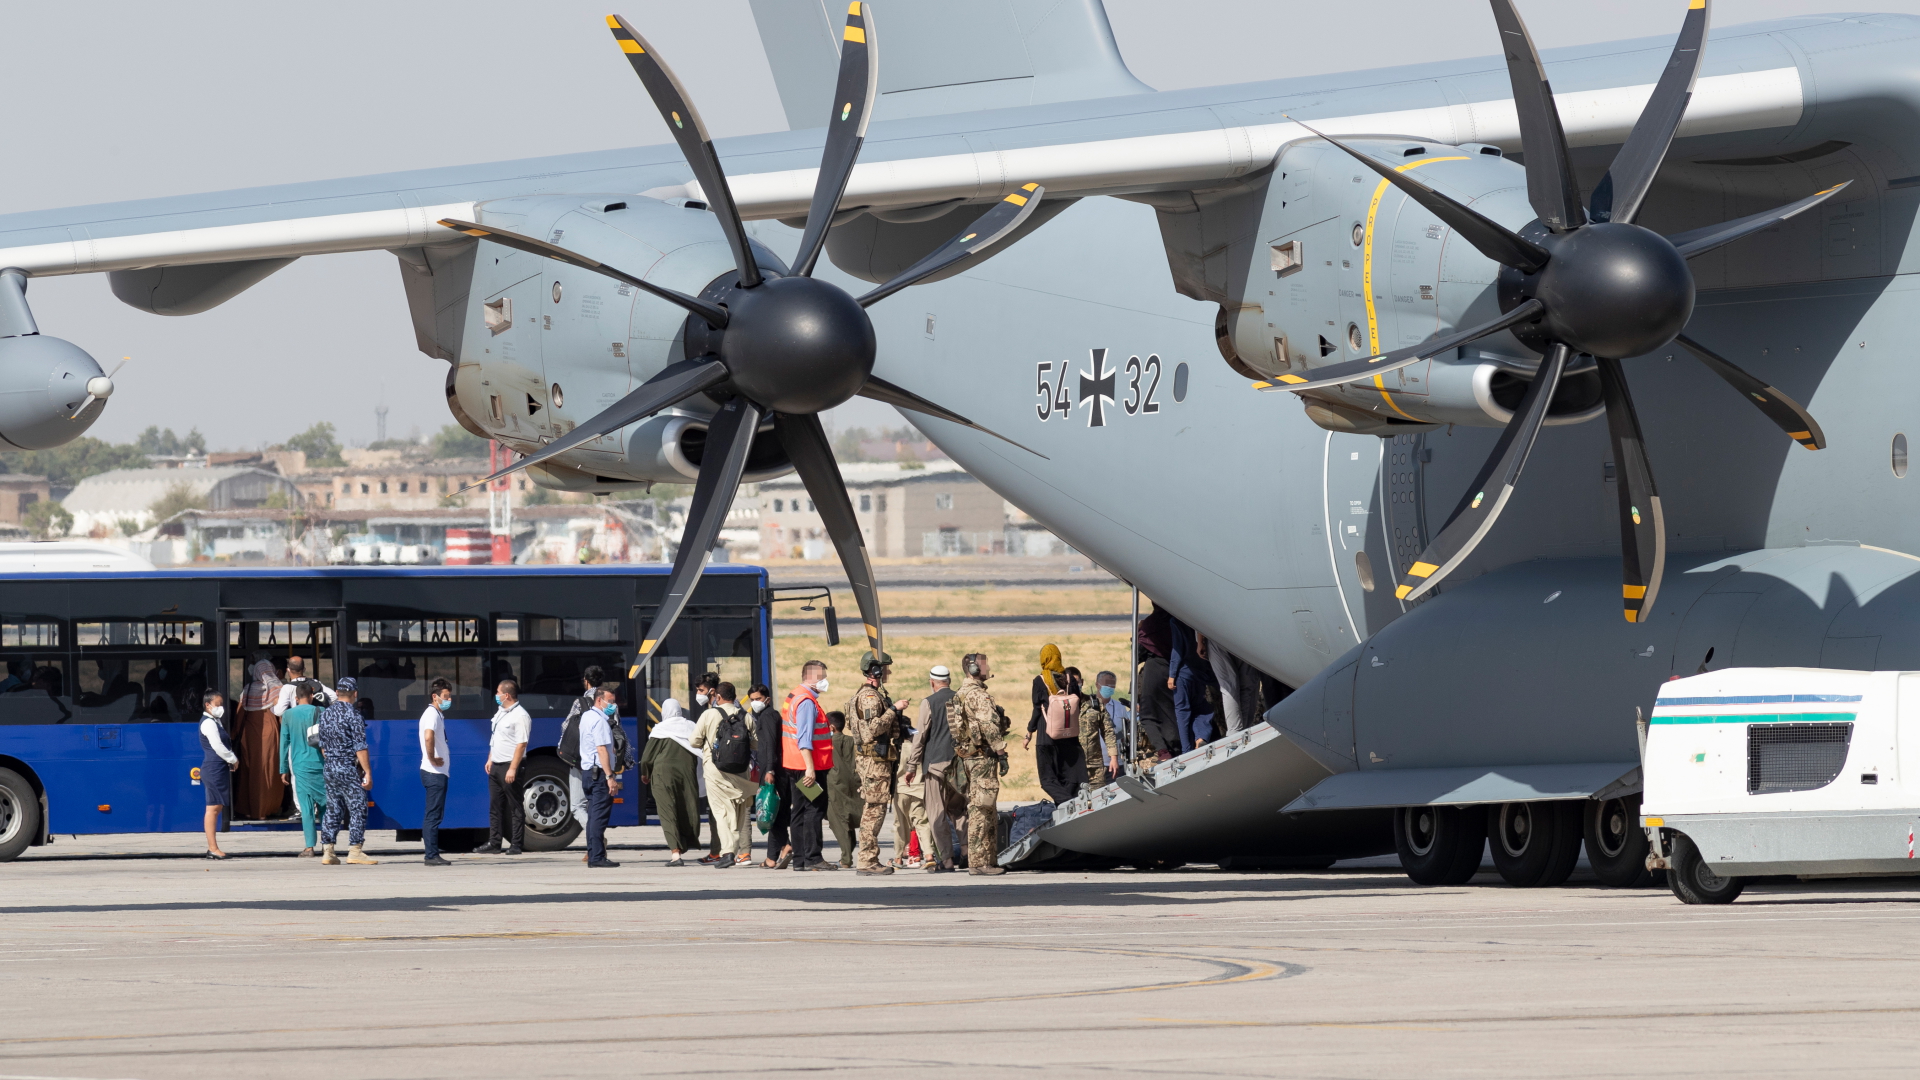 Usbekistan, Taschkent: Ankunft eines Airbus A400M der Bundeswehr mit Schutzbedürftigen aus Kabul. | dpa